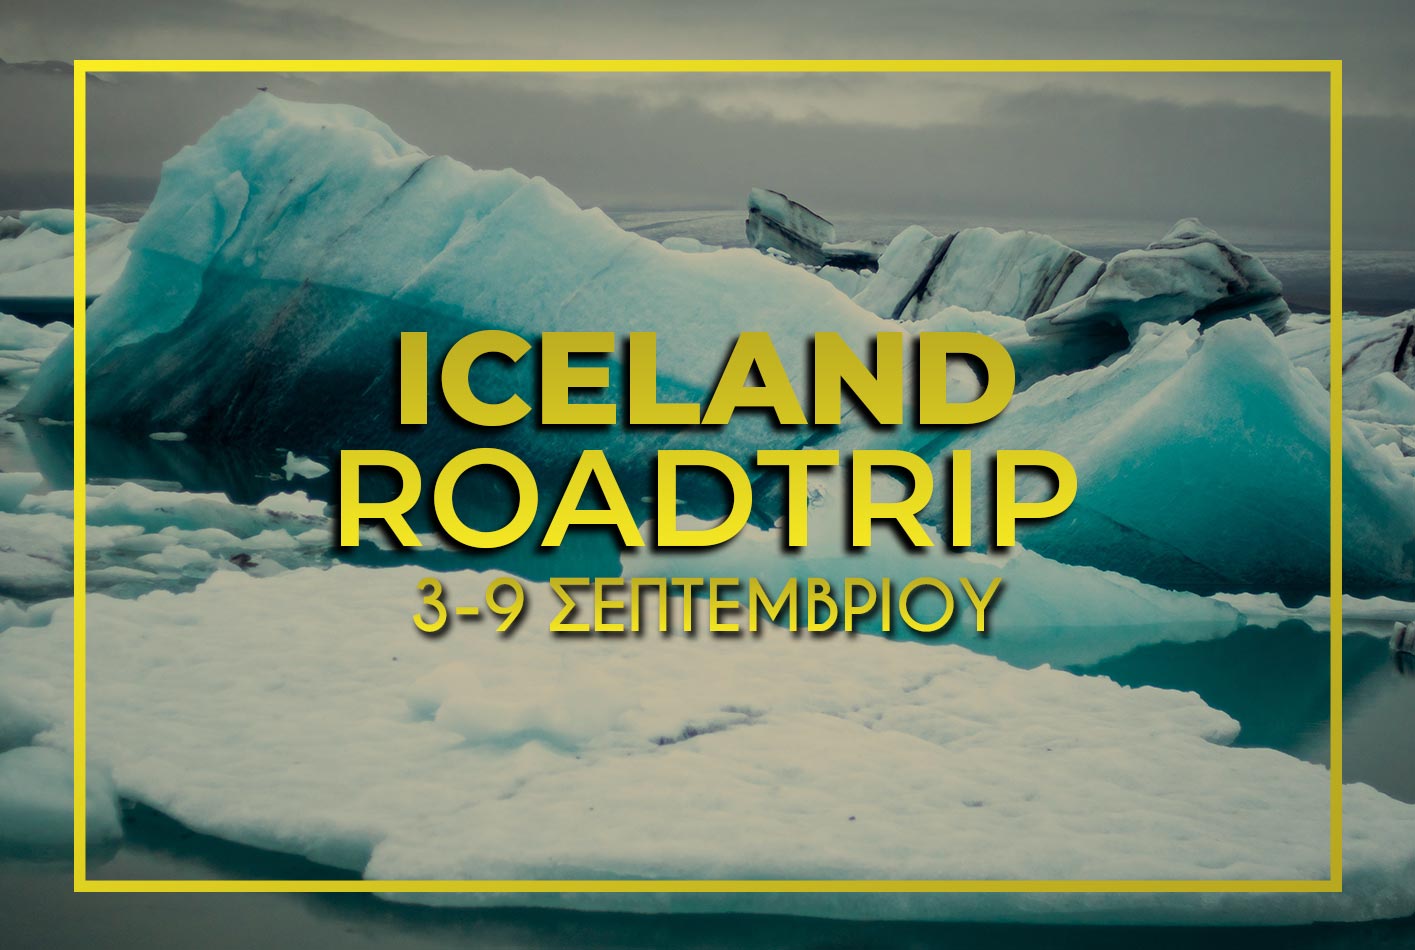 Ισλανδία 3-9 Σεπτεμβρίου